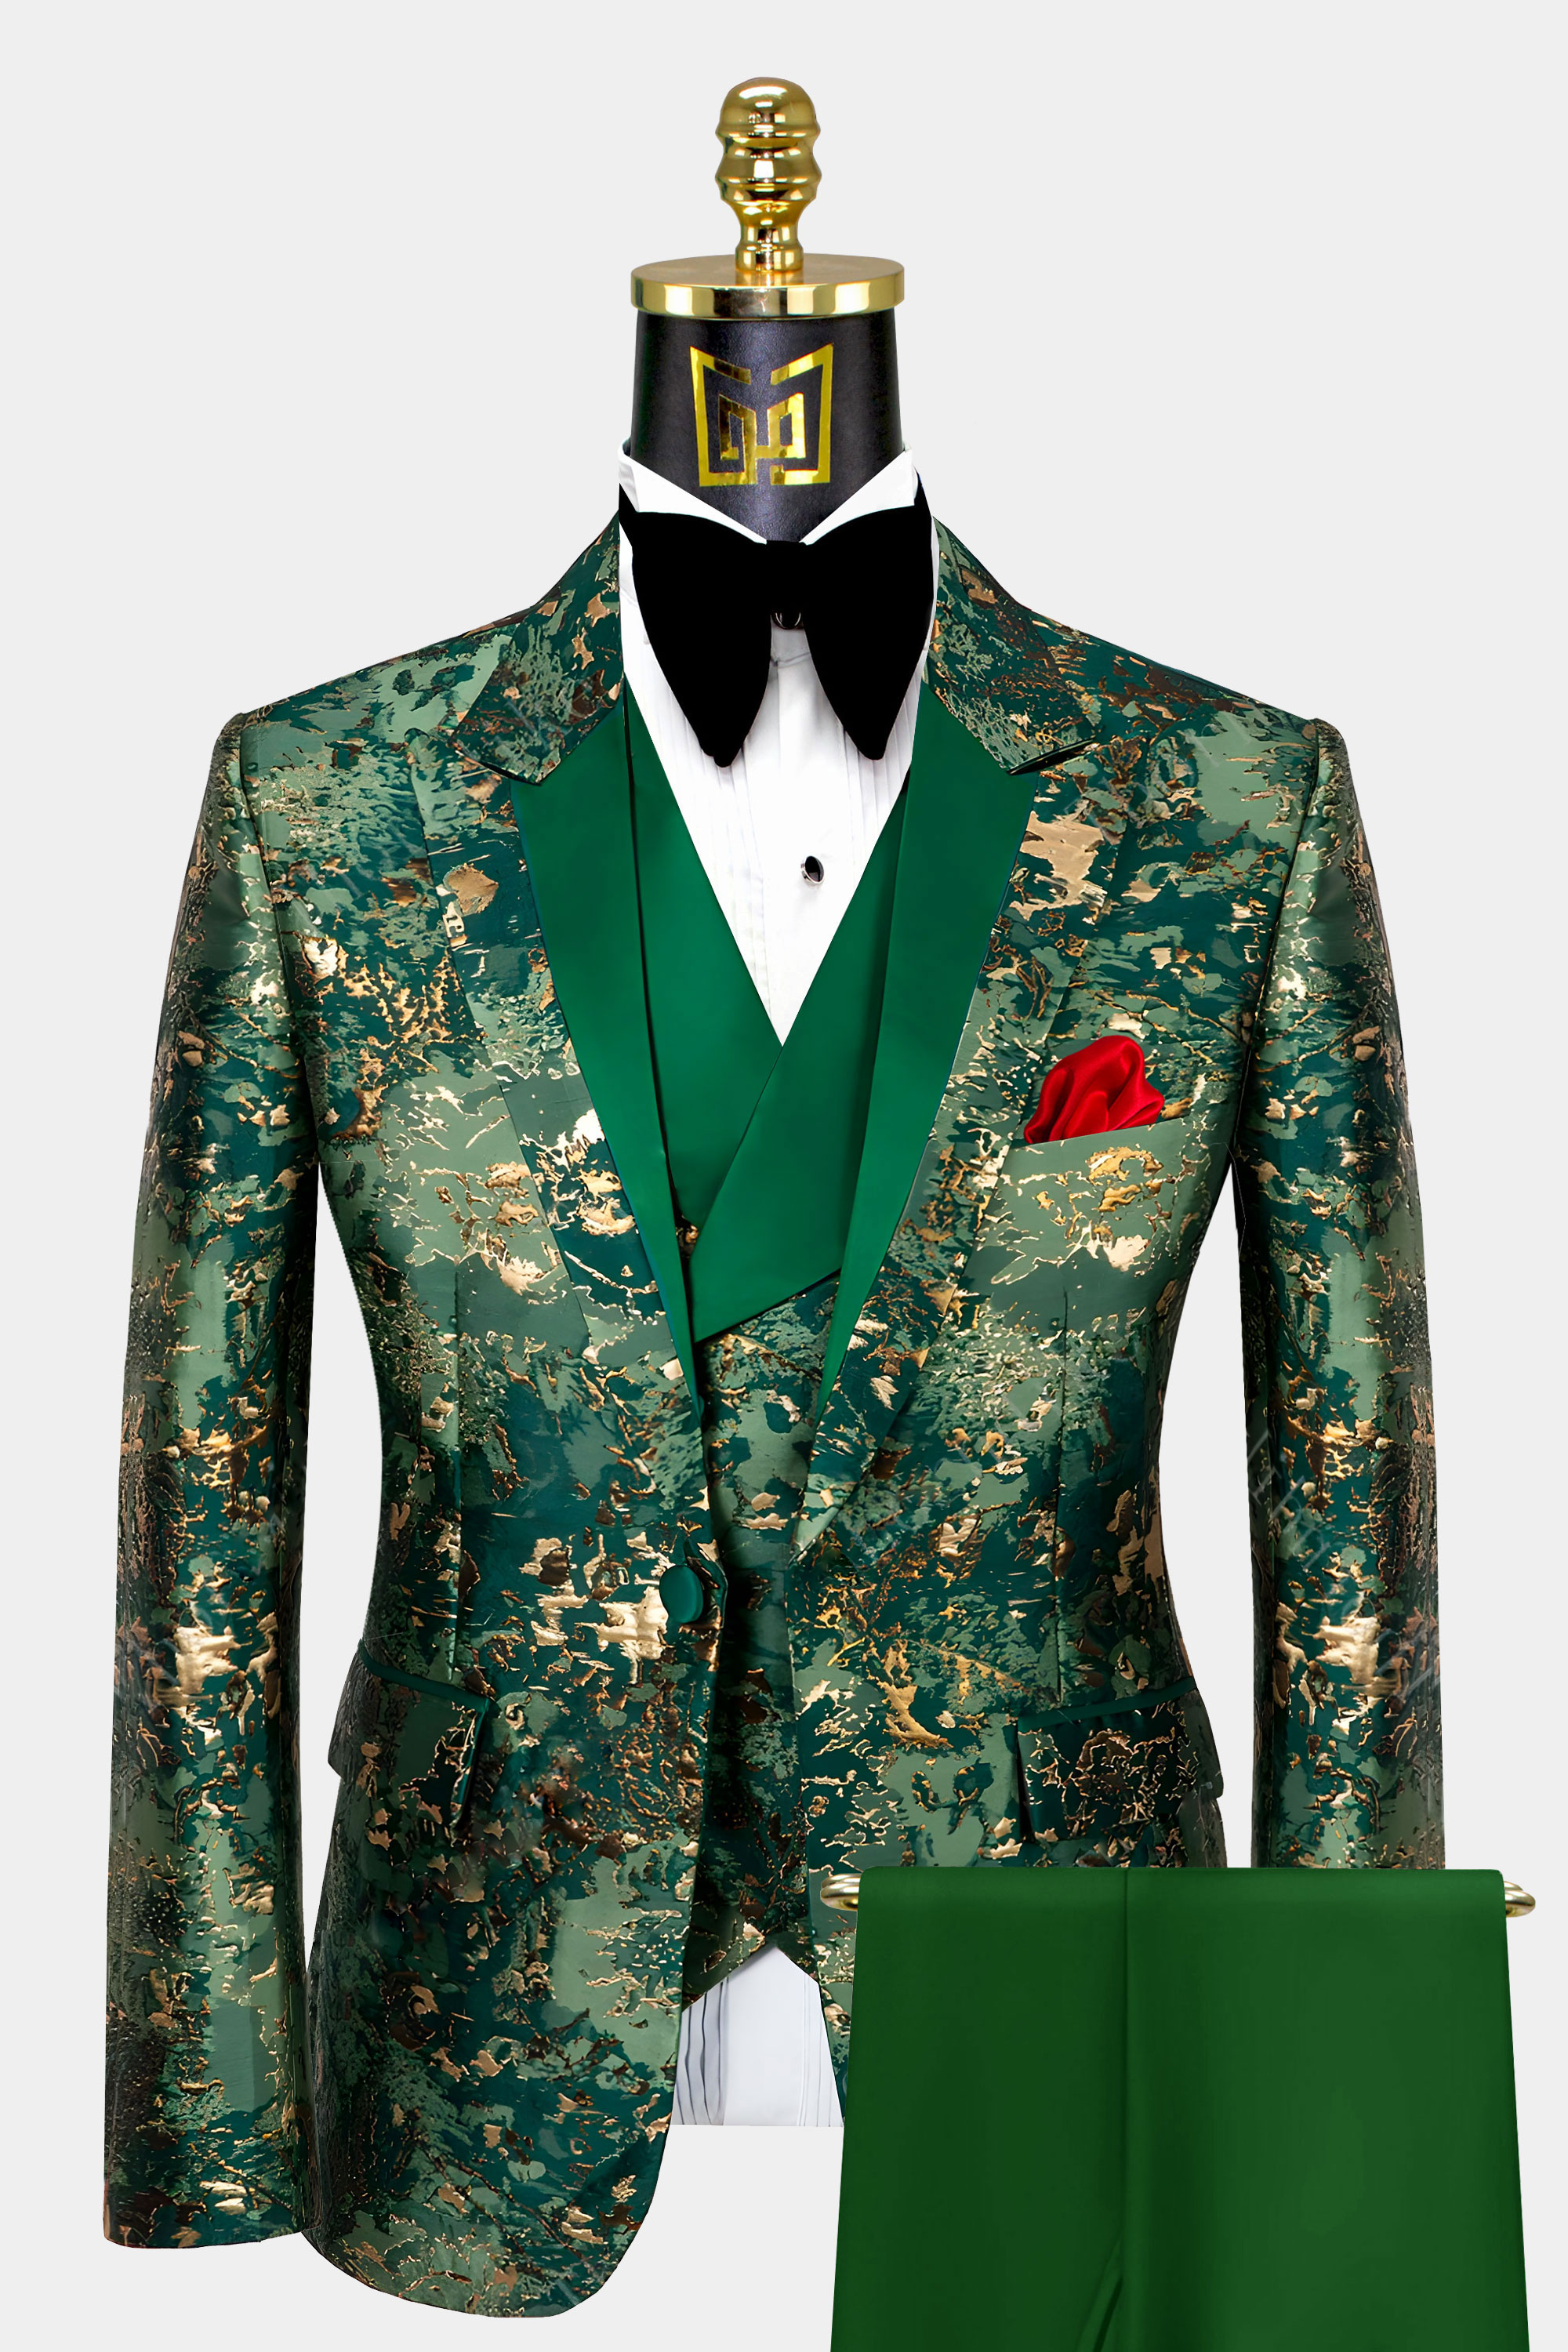 Mens-Camo-Tuxedo-Wedding-Groom-Prom-Suit-Green-Gold-from-Gentlemansguru.com_